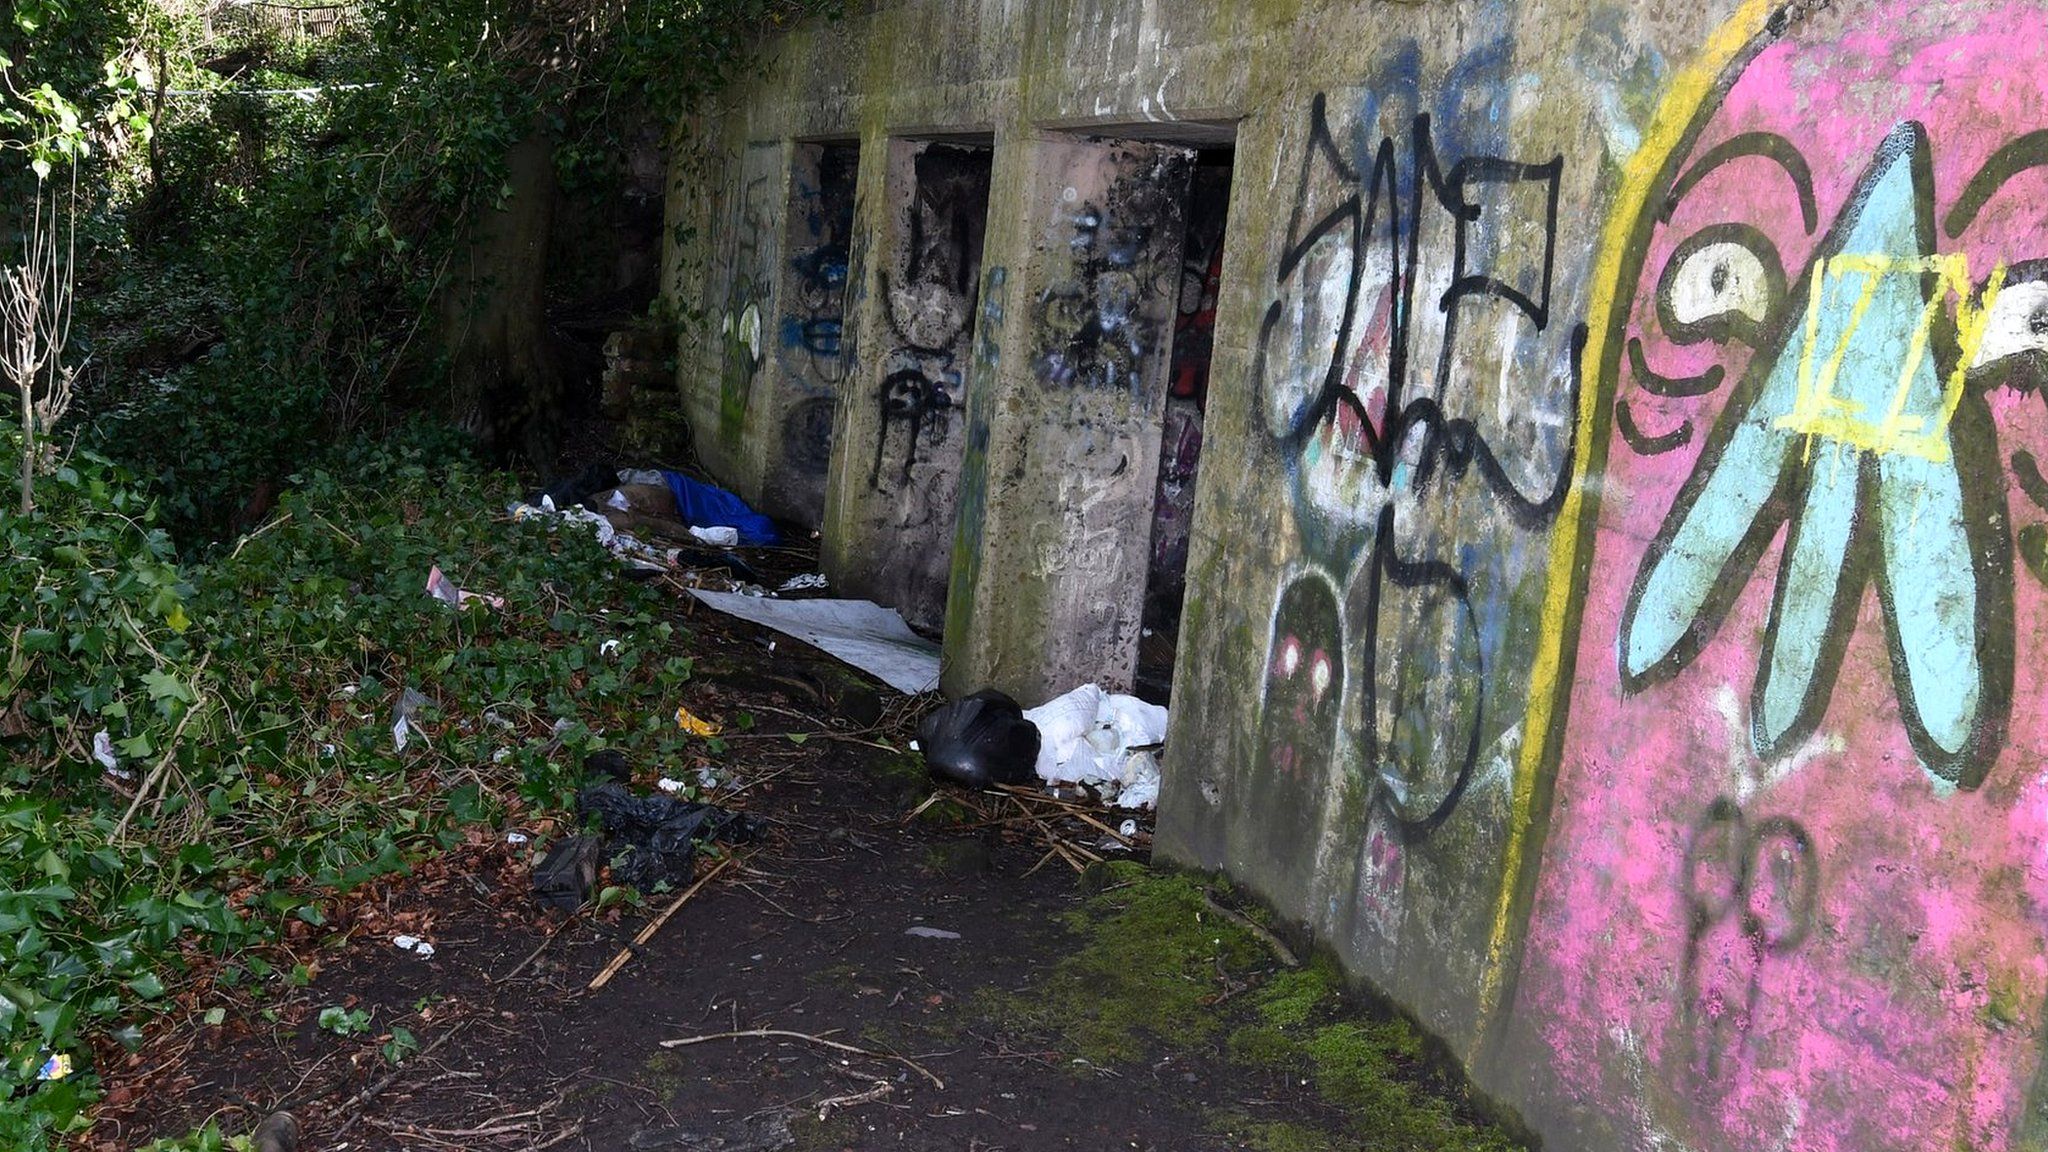 Kersal Dale bunker in Salford